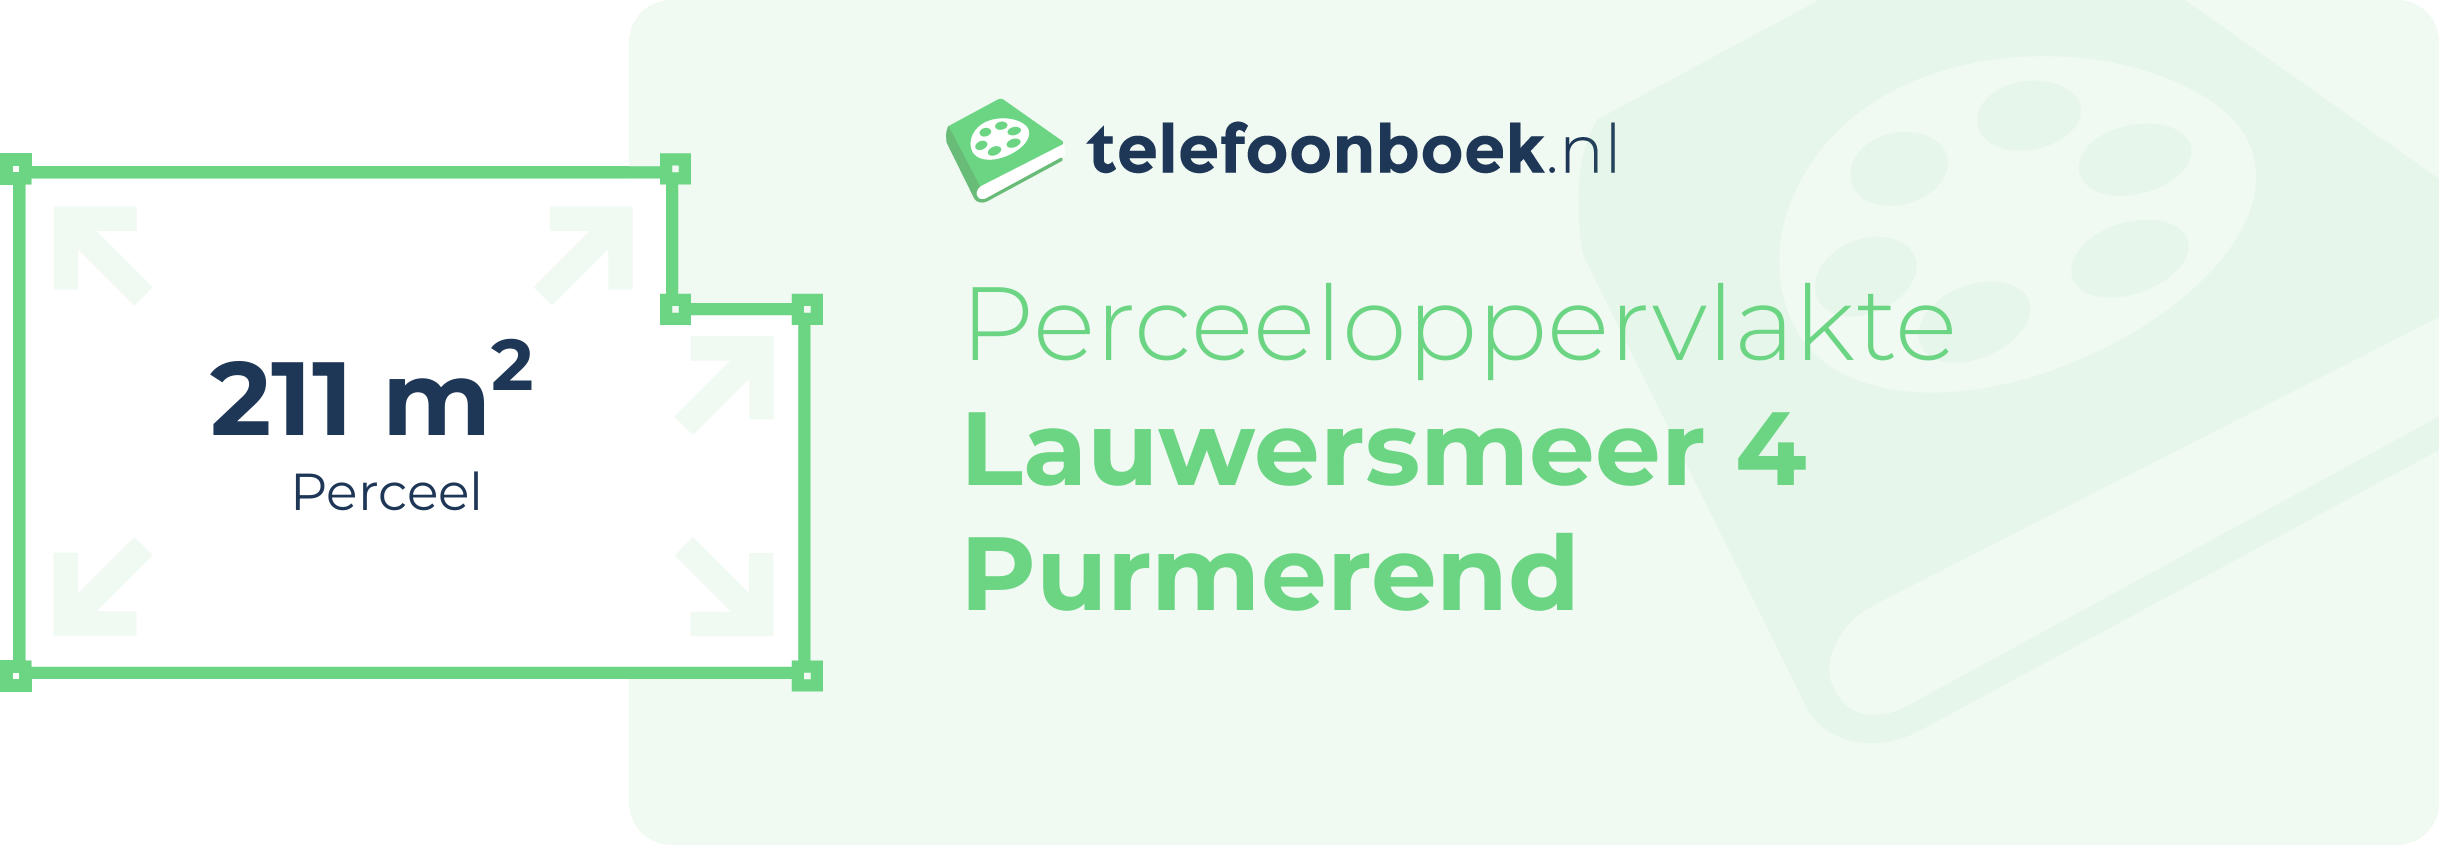 Perceeloppervlakte Lauwersmeer 4 Purmerend